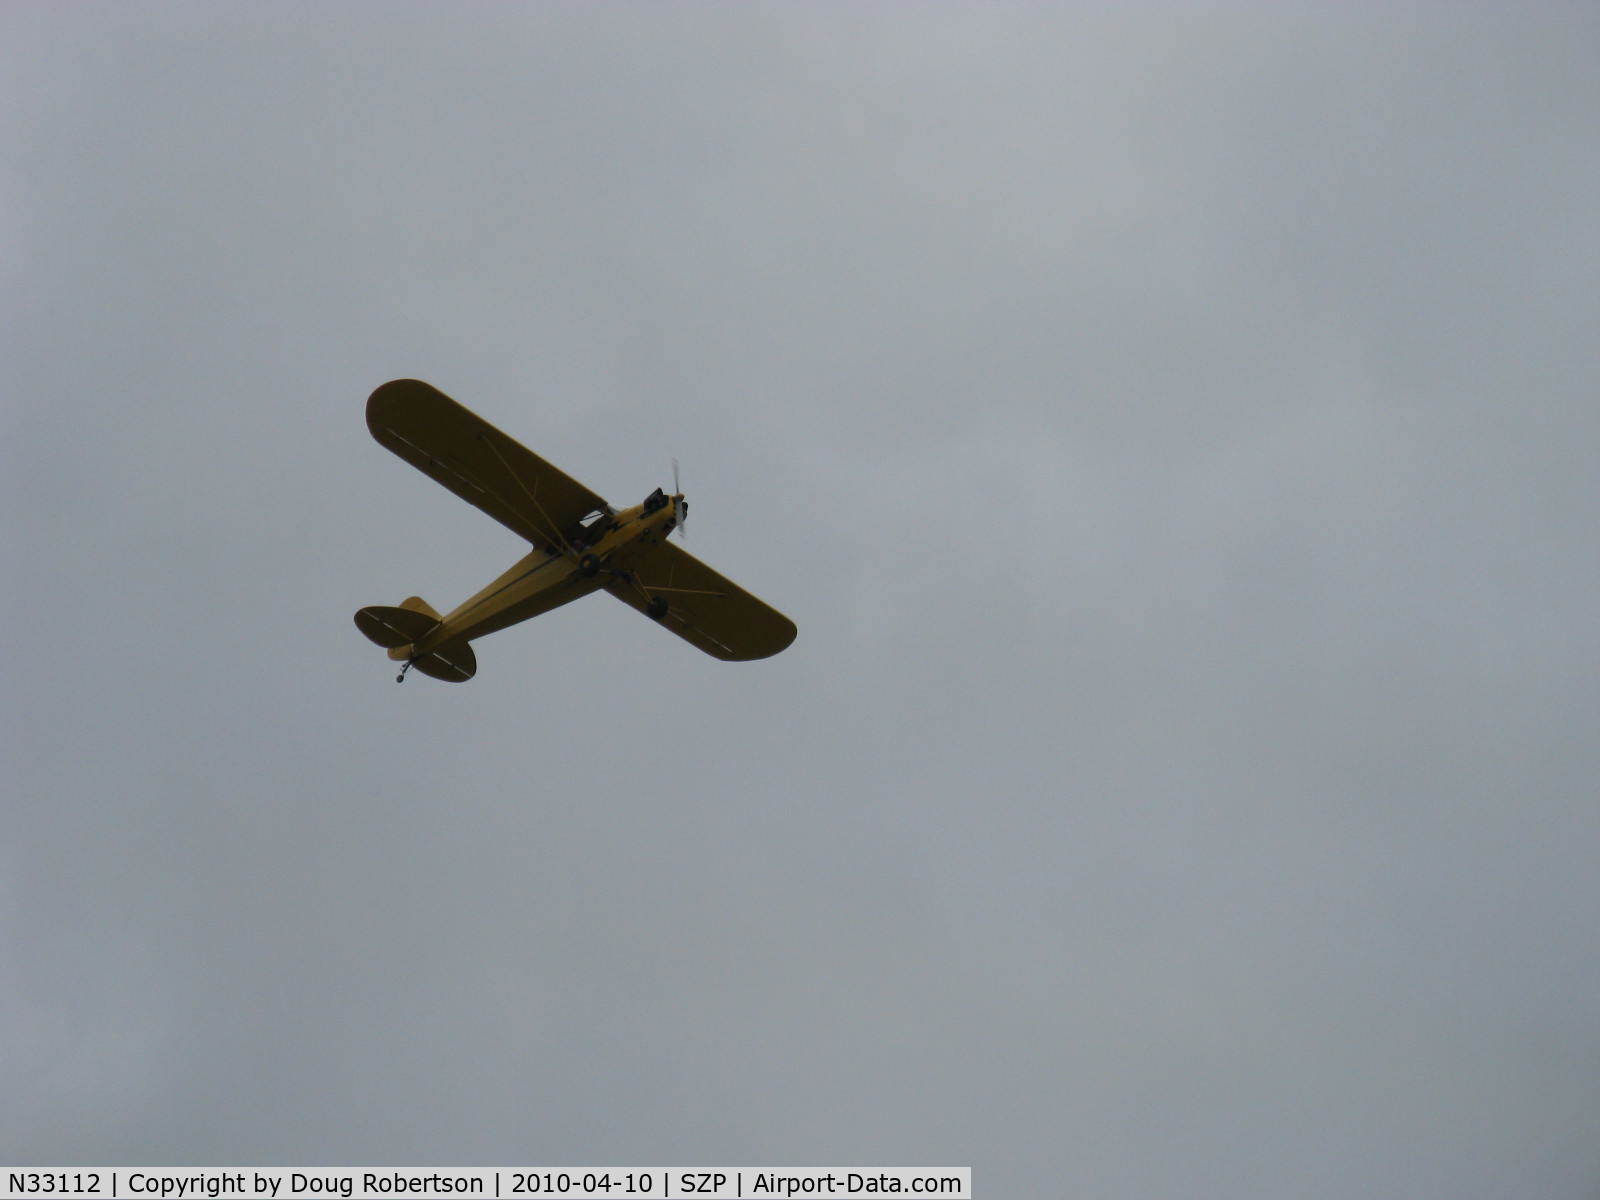 N33112, 1940 Piper J3C-65 Cub Cub C/N 5830, 1940 Piper J3C-65 CUB, Continental C90 90 Hp upgrade, takeoff climb Rwy 22